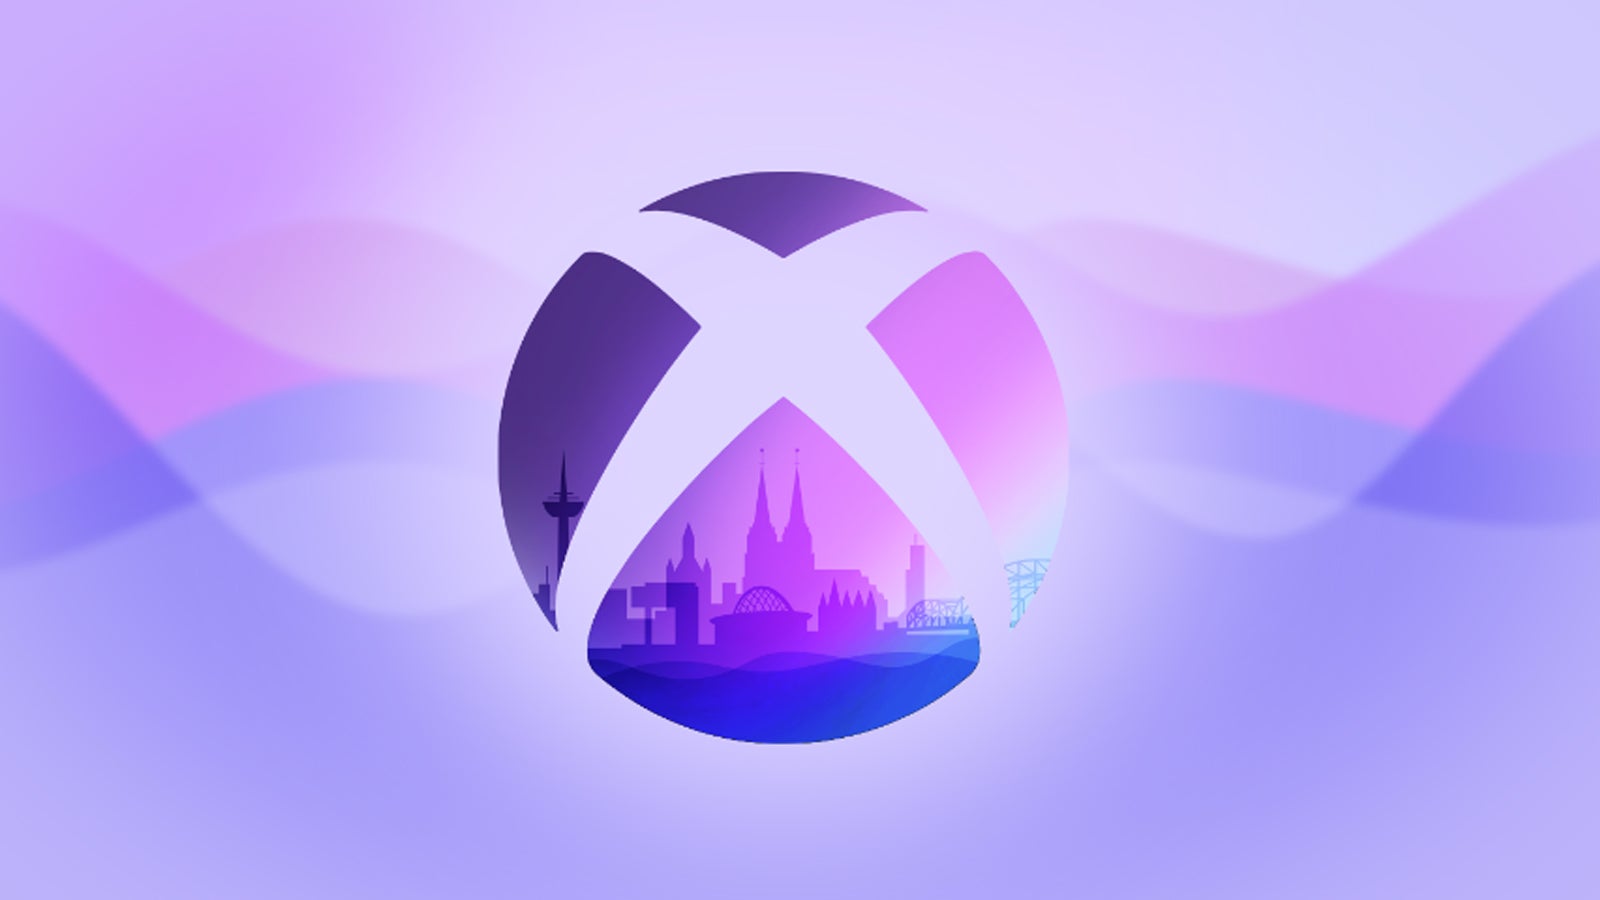 Microsoft's Gamescom 2022 logo.